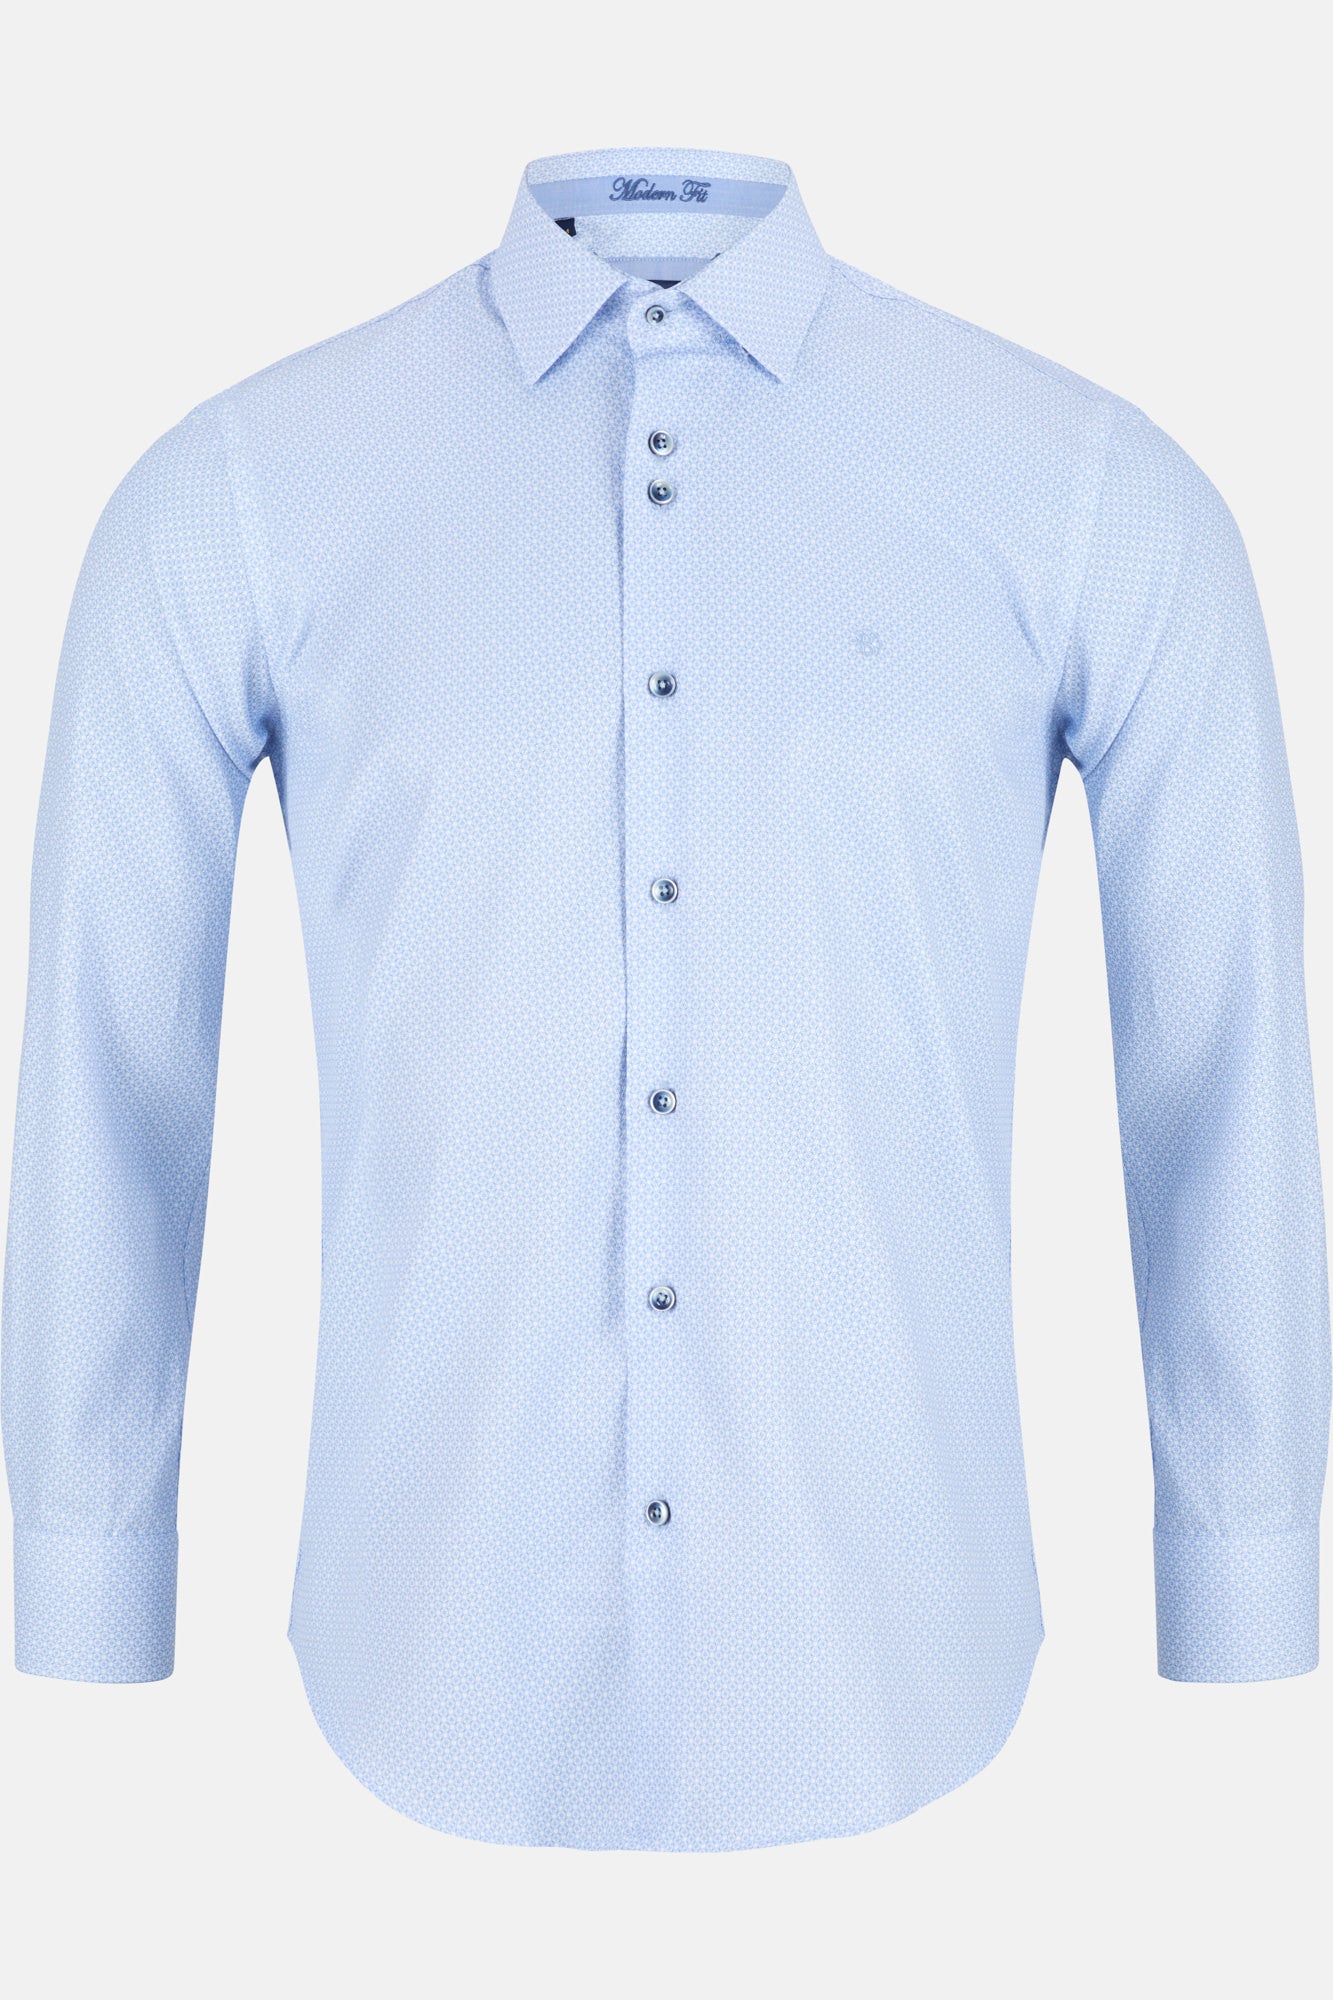 Ural Blue Long Sleeve Shirt